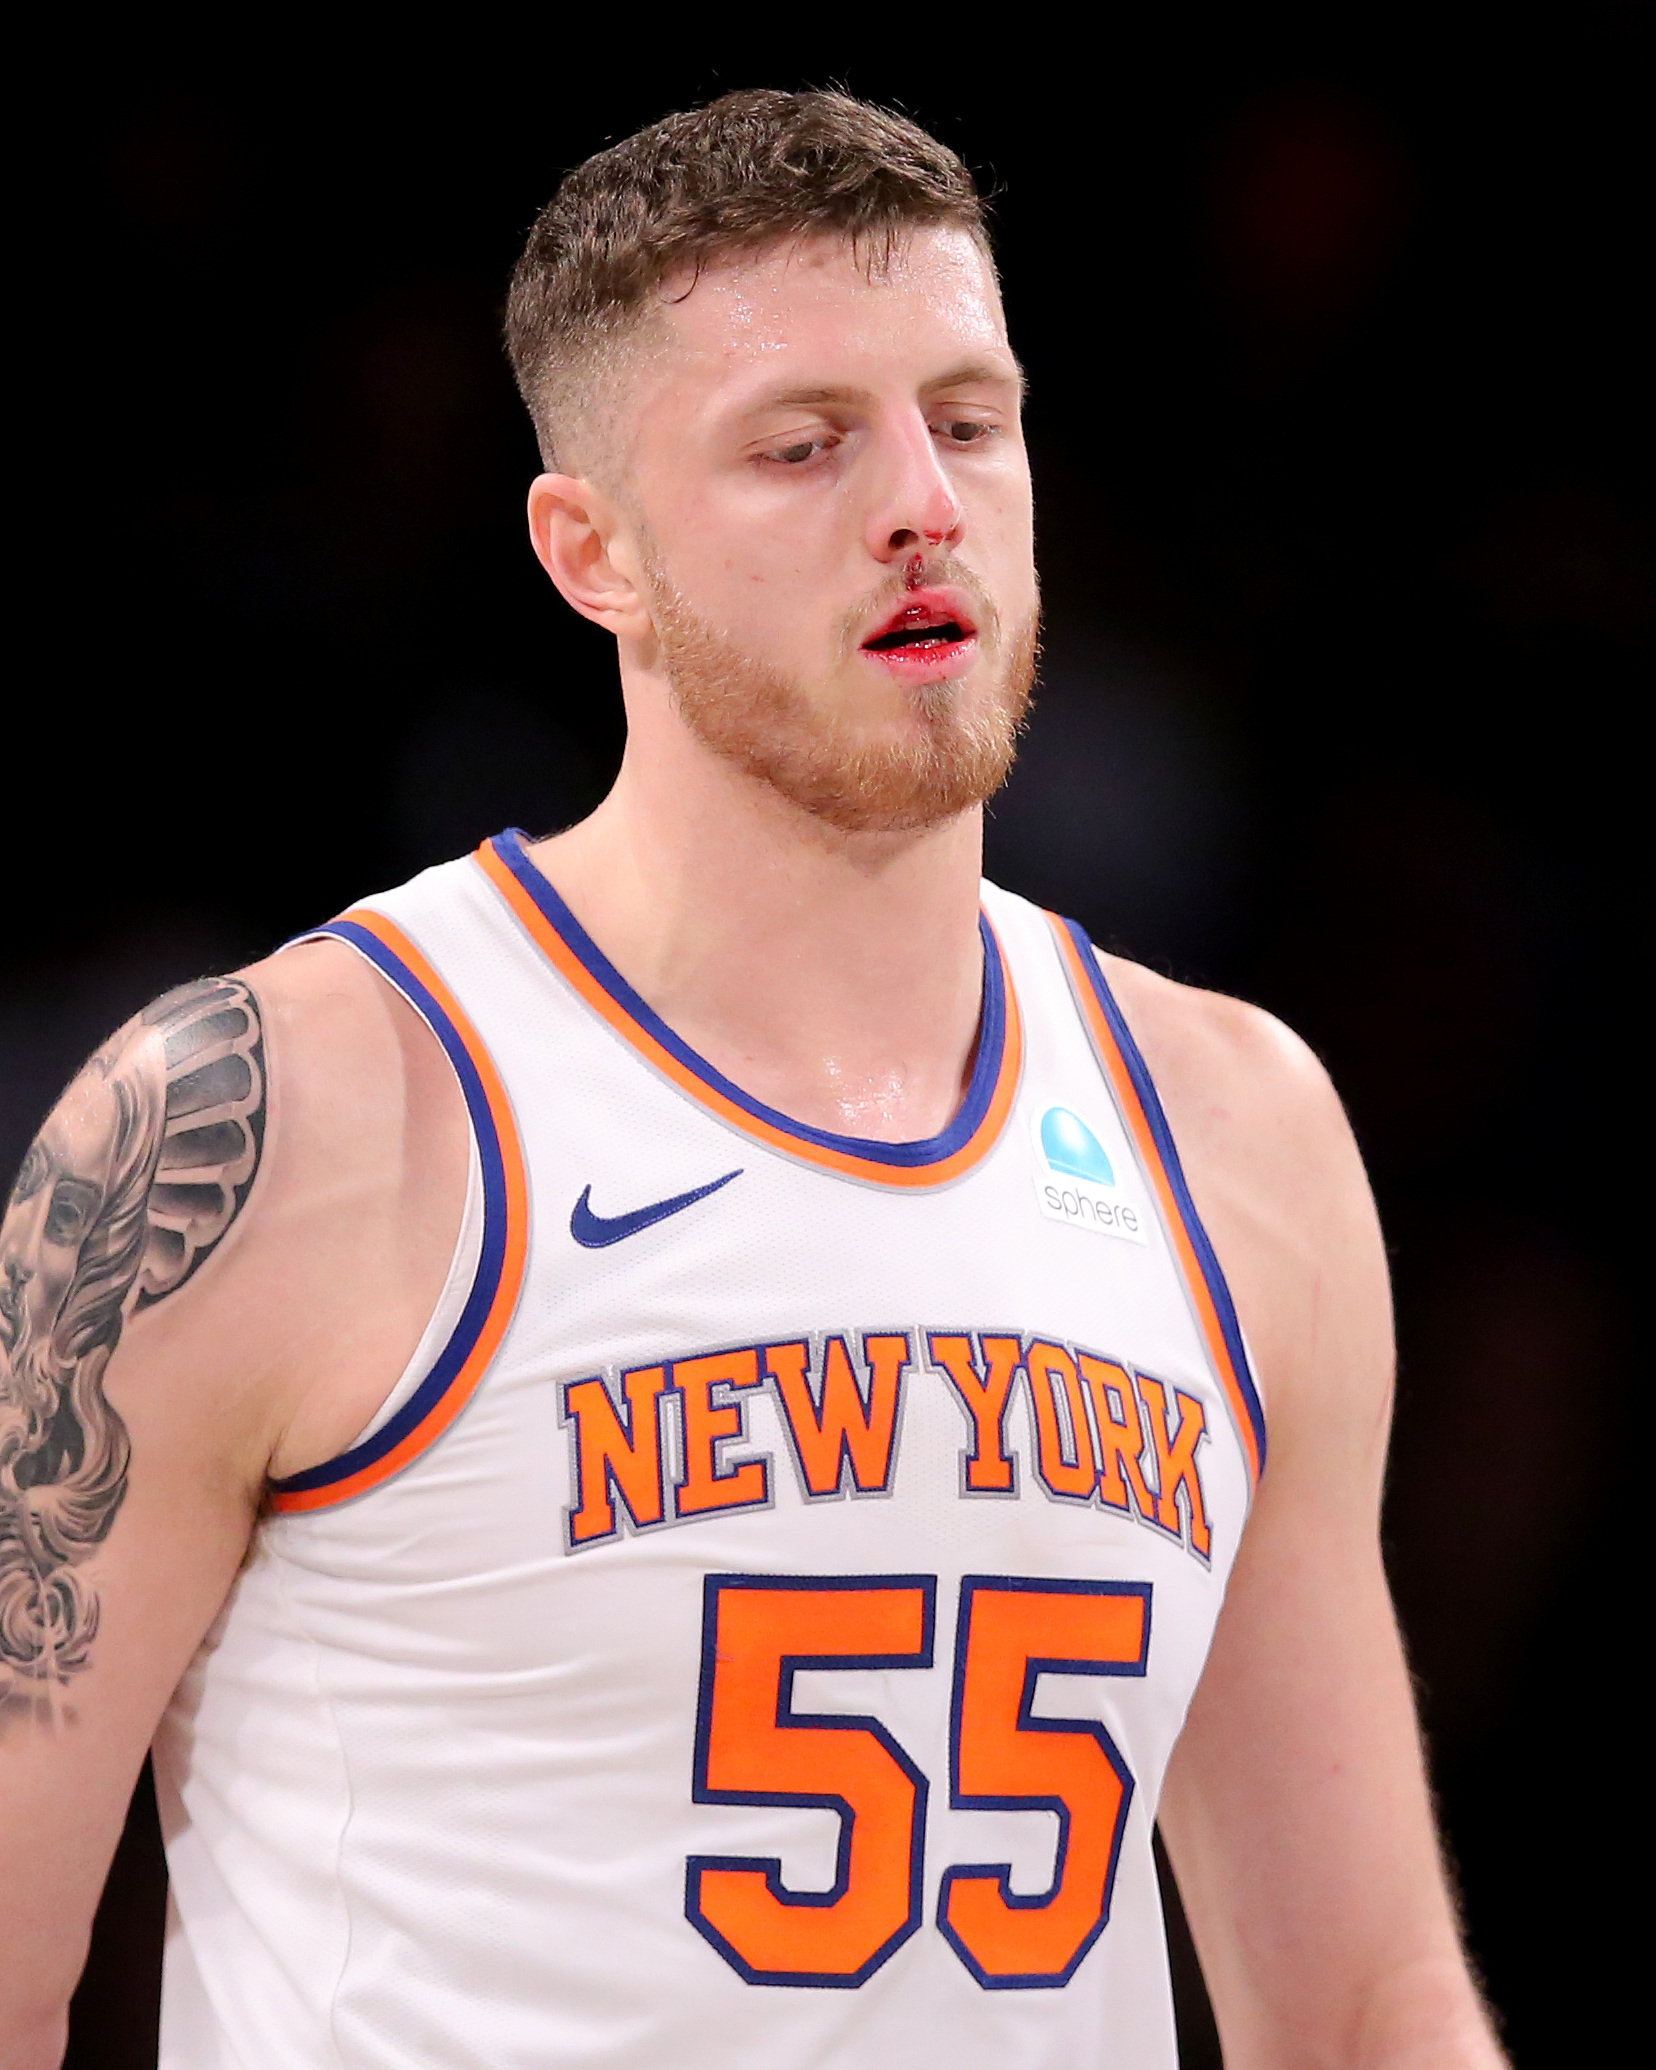 New York Knicks 121x102 Brooklyn Nets 